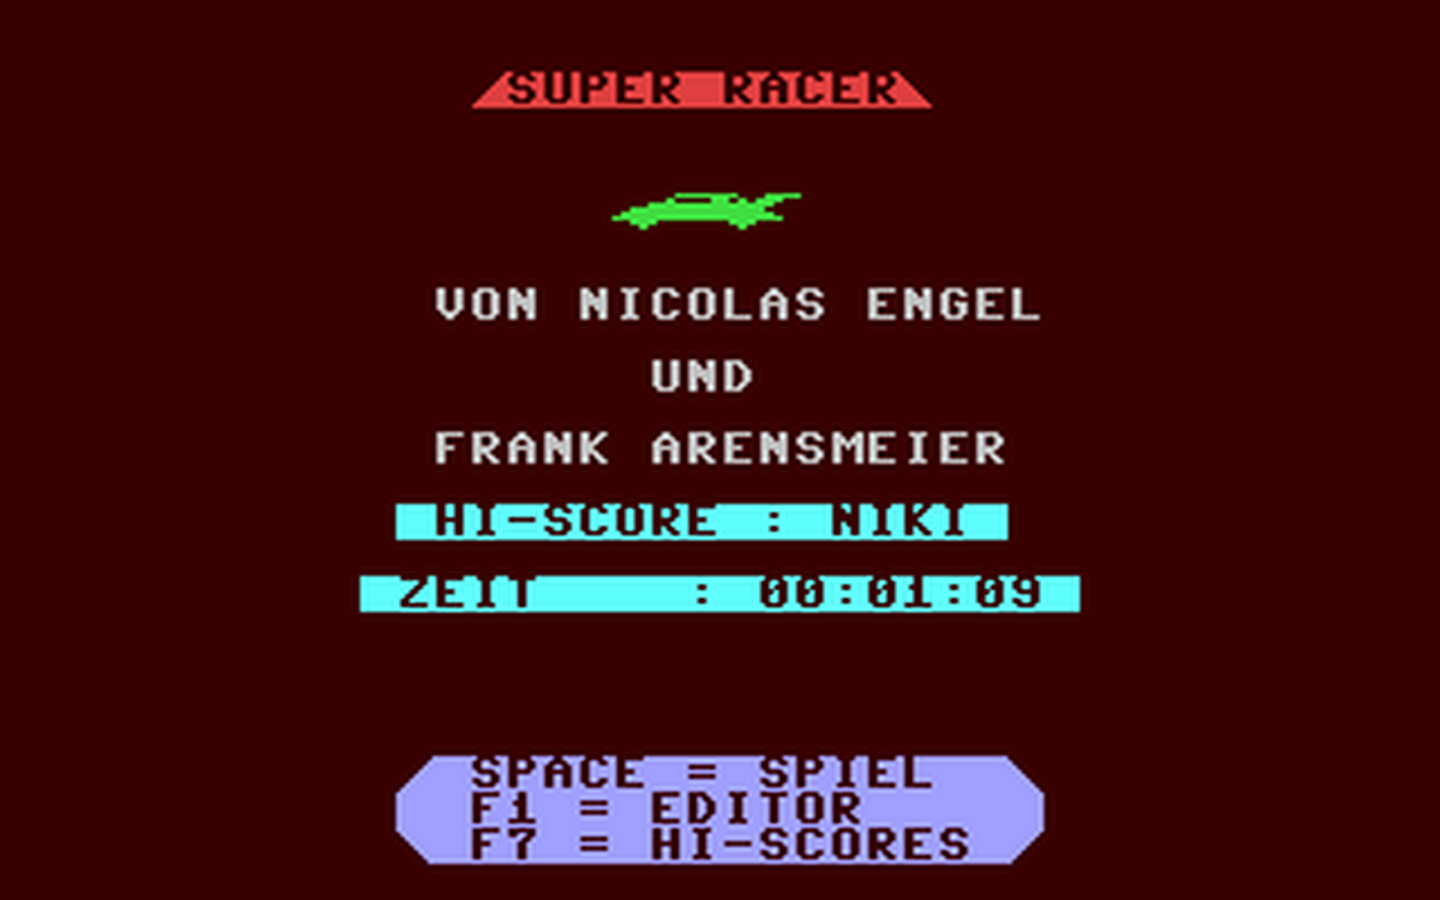 C64 GameBase Super_Racer CA-Verlags_GmbH/Commodore_Disc 1989